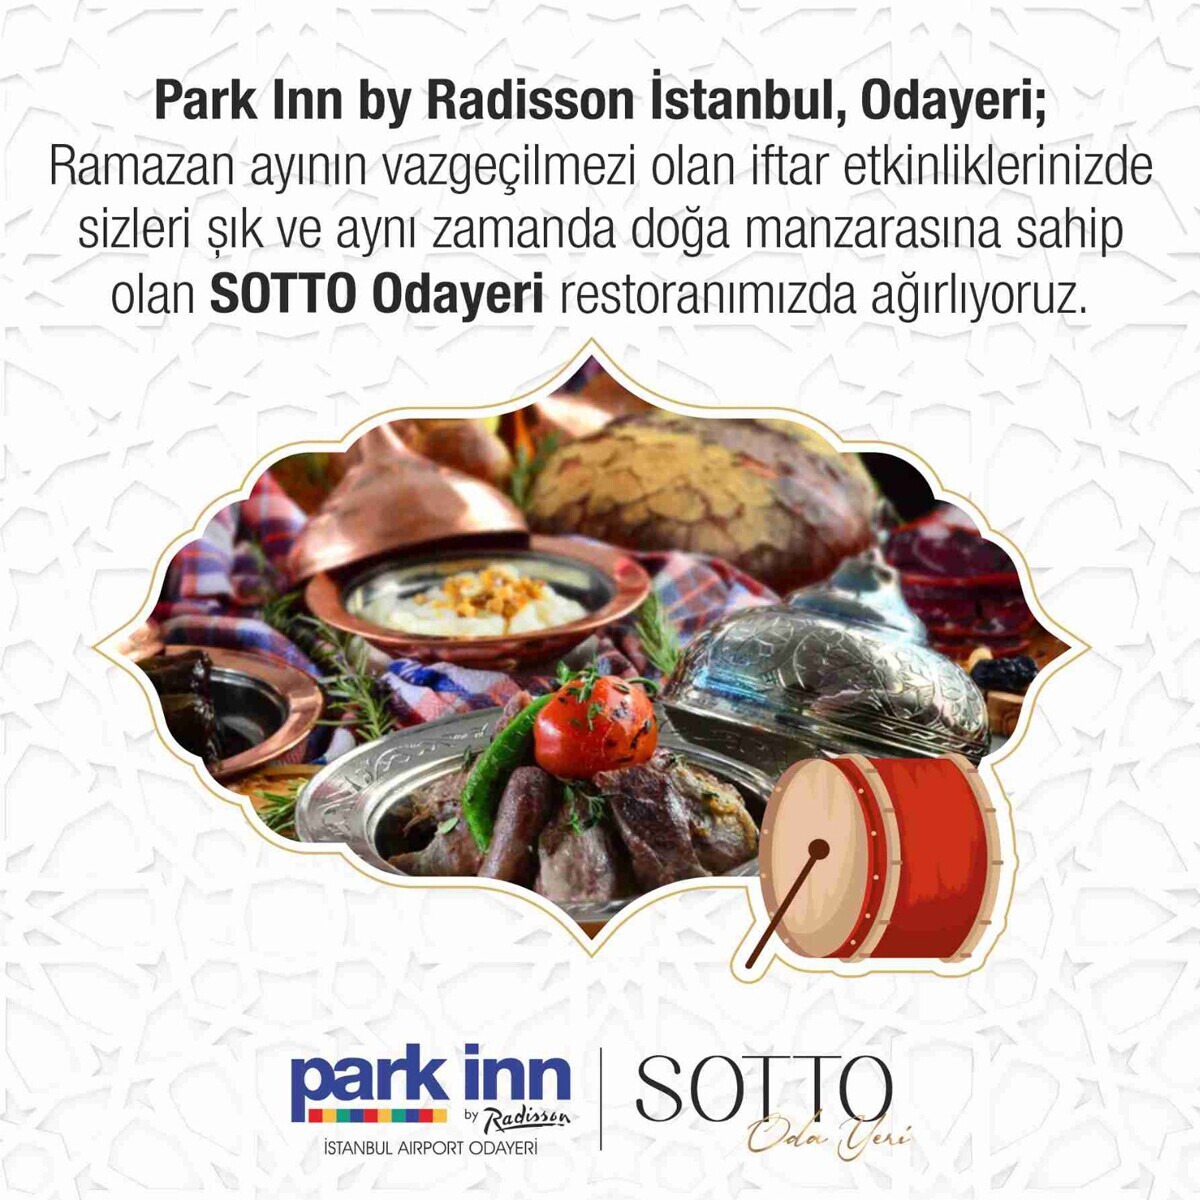 Park Inn by Radisson Istanbul Airport Odayeri’de Leziz İftar Menüleri